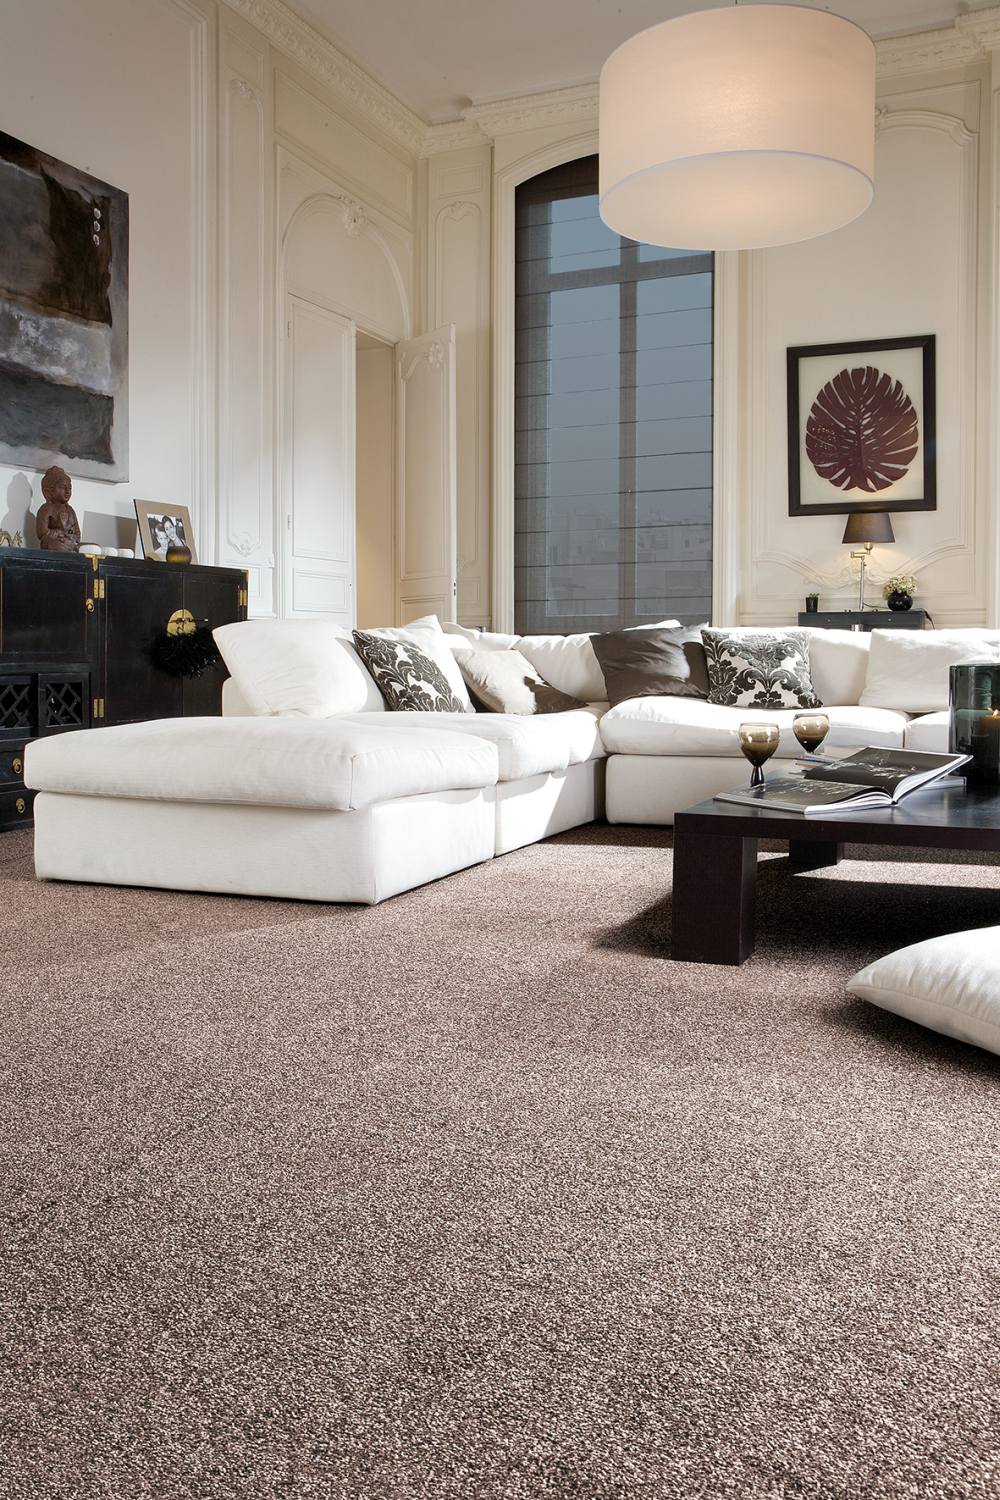 Duchess Twist Luxury Carpet - 850 Brown